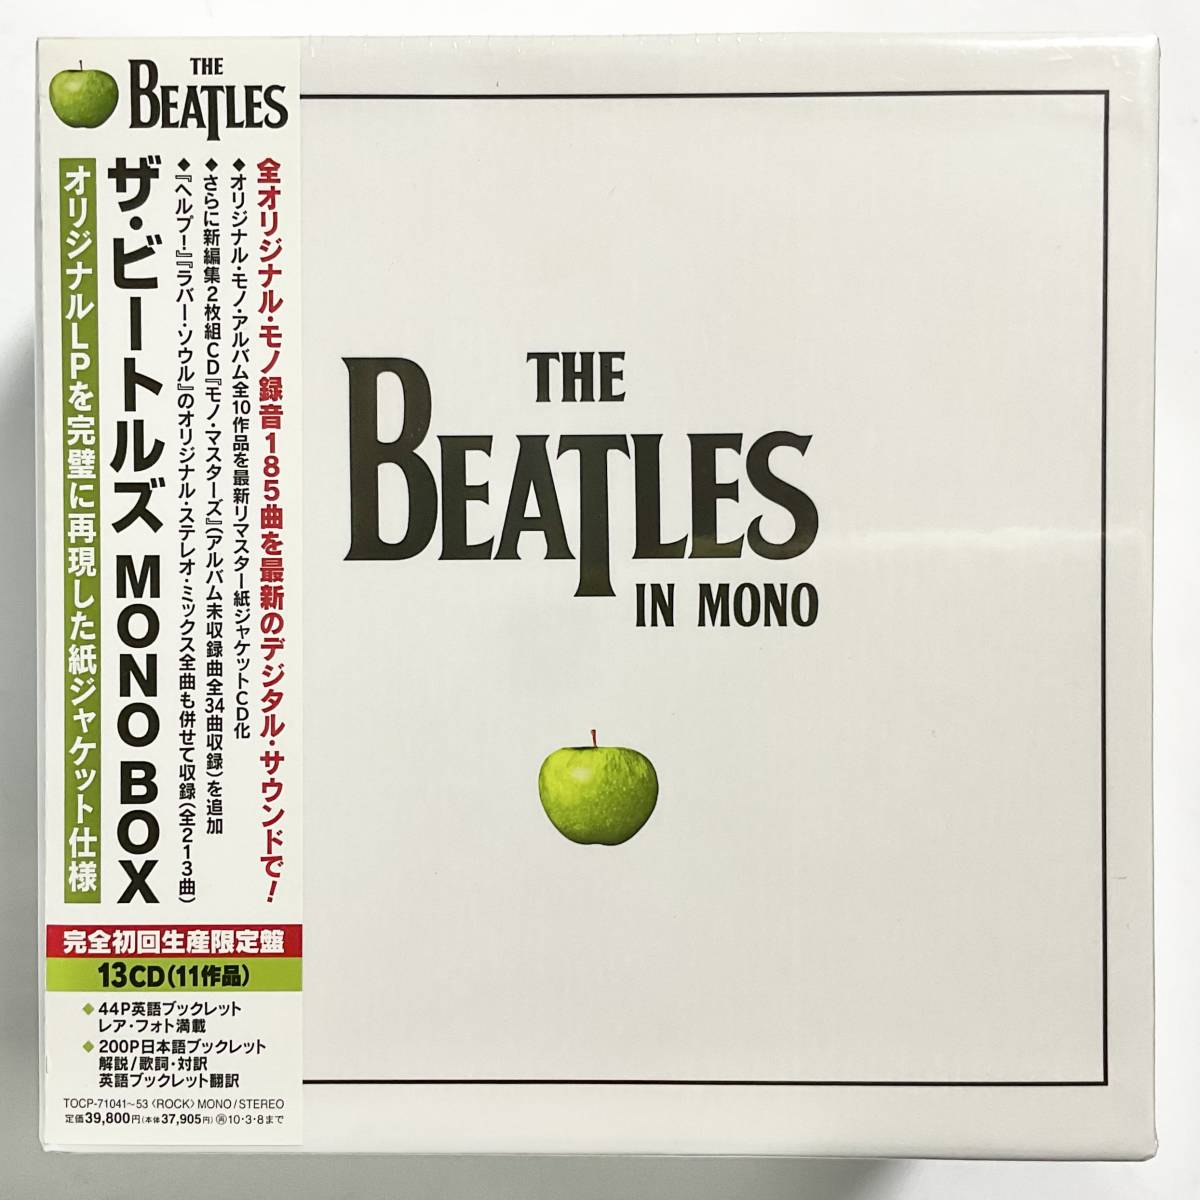 ブックレット2冊良好ザ・ビートルズ　MONO BOX  完全初回生産限定盤  13CD(11作品)